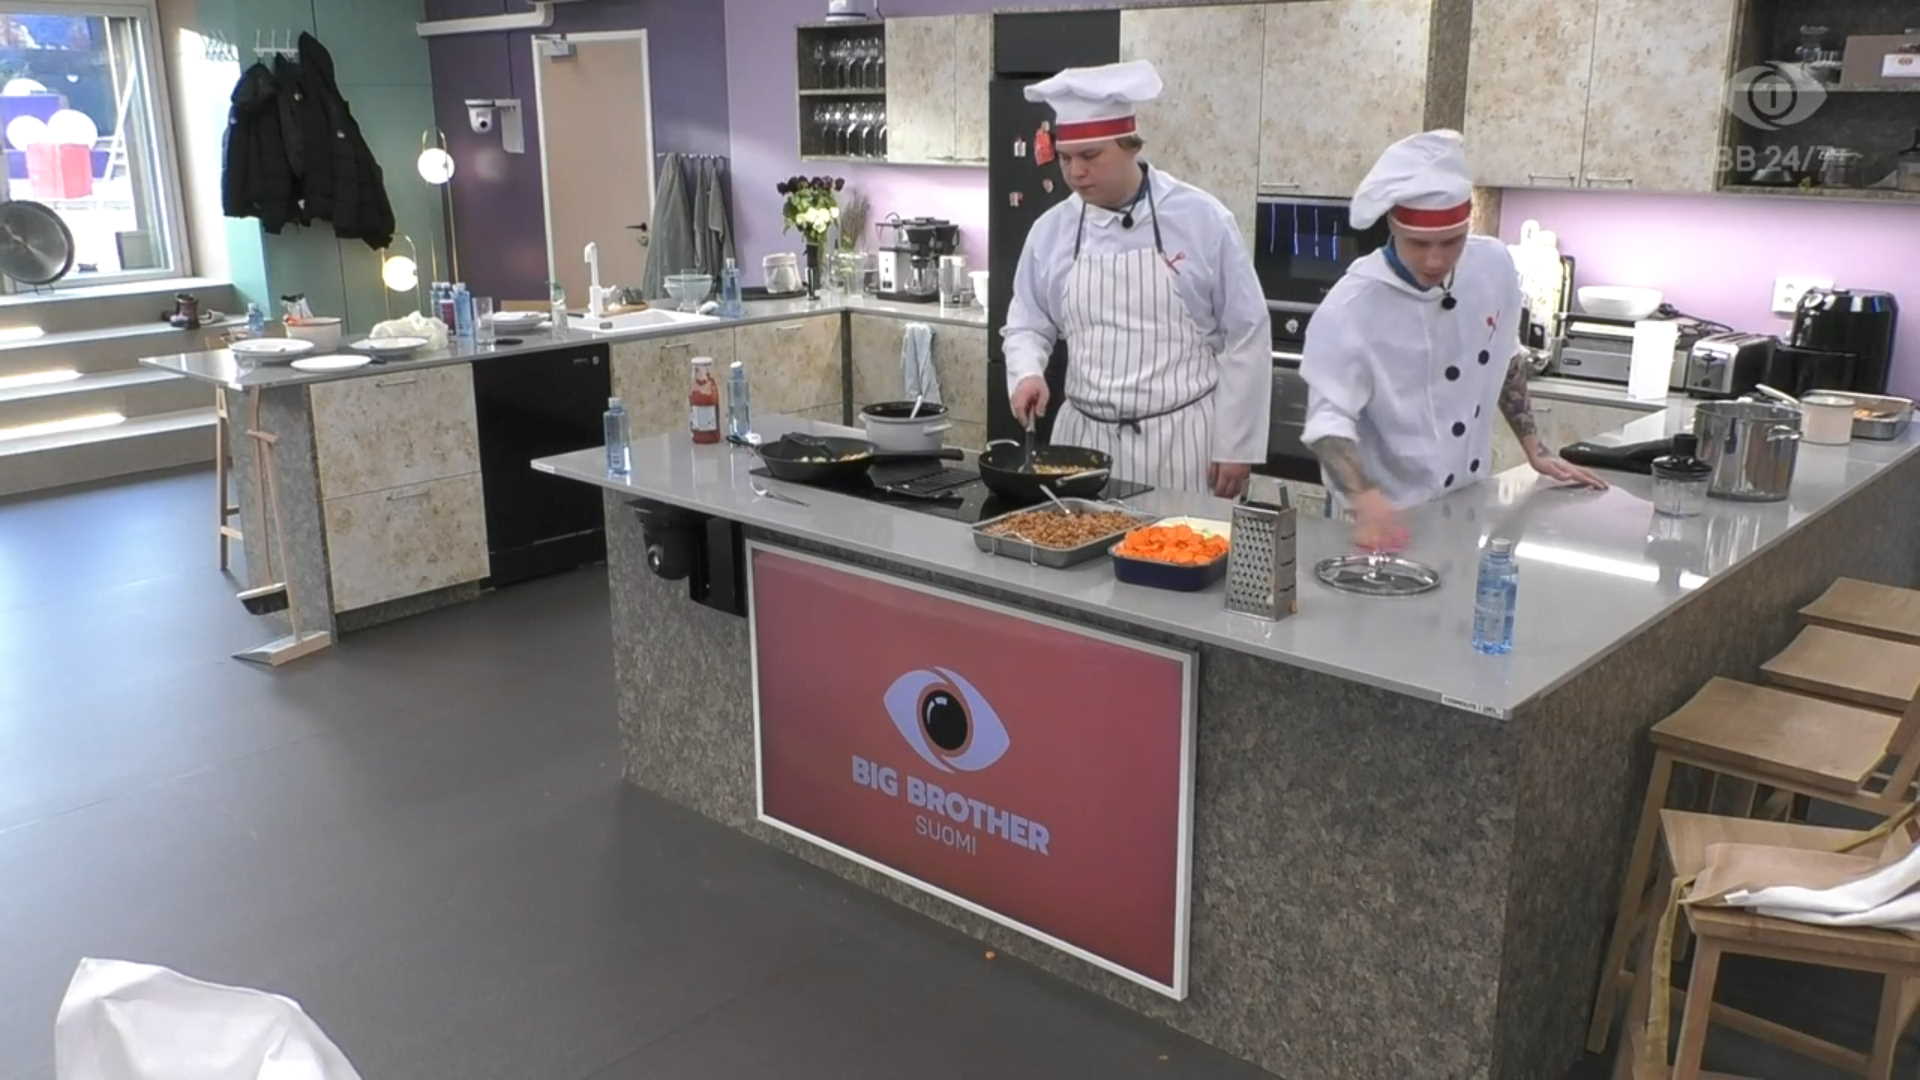 Ville ja Anssi ottivat ensimmäisen keittiövuoron. Kuva: © Nelonen Media.